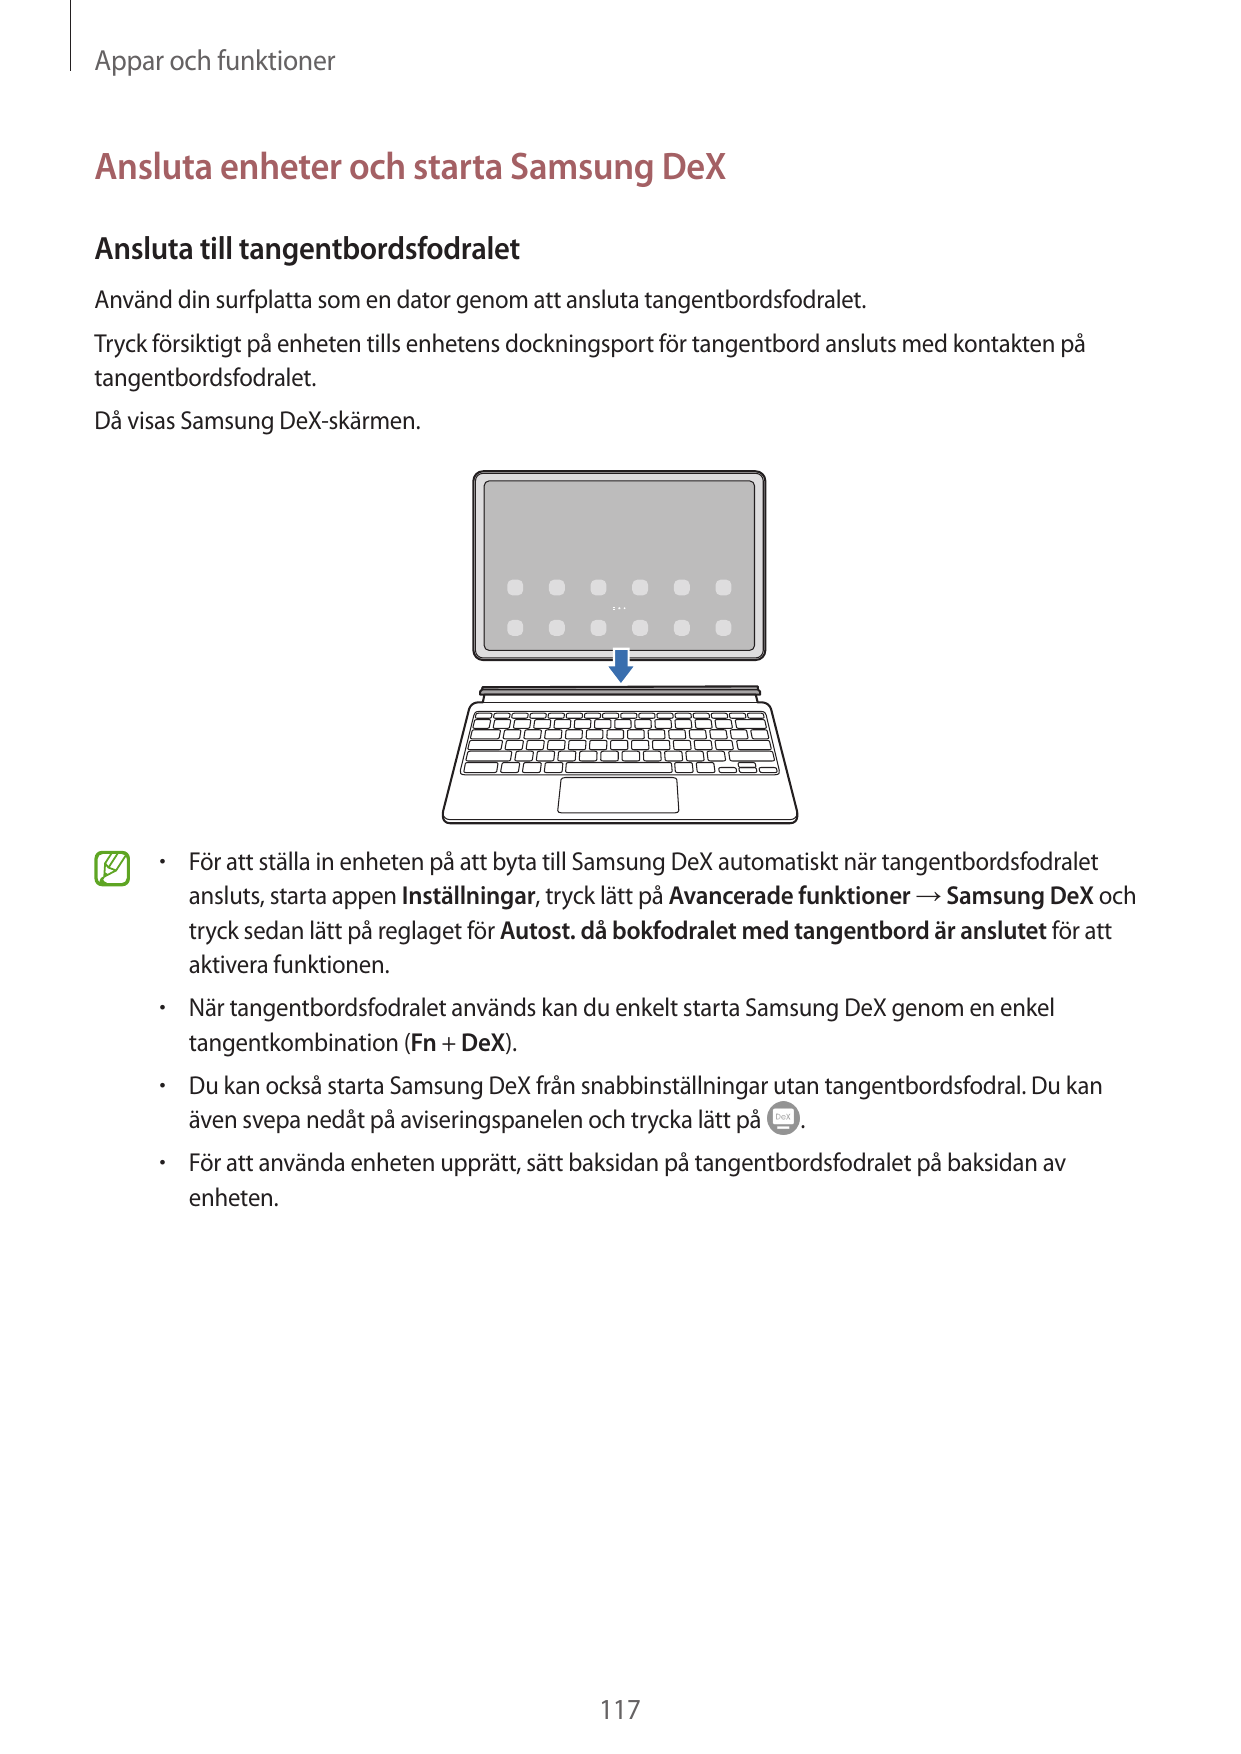 Appar och funktionerAnsluta enheter och starta Samsung DeXAnsluta till tangentbordsfodraletAnvänd din surfplatta som en dator ge